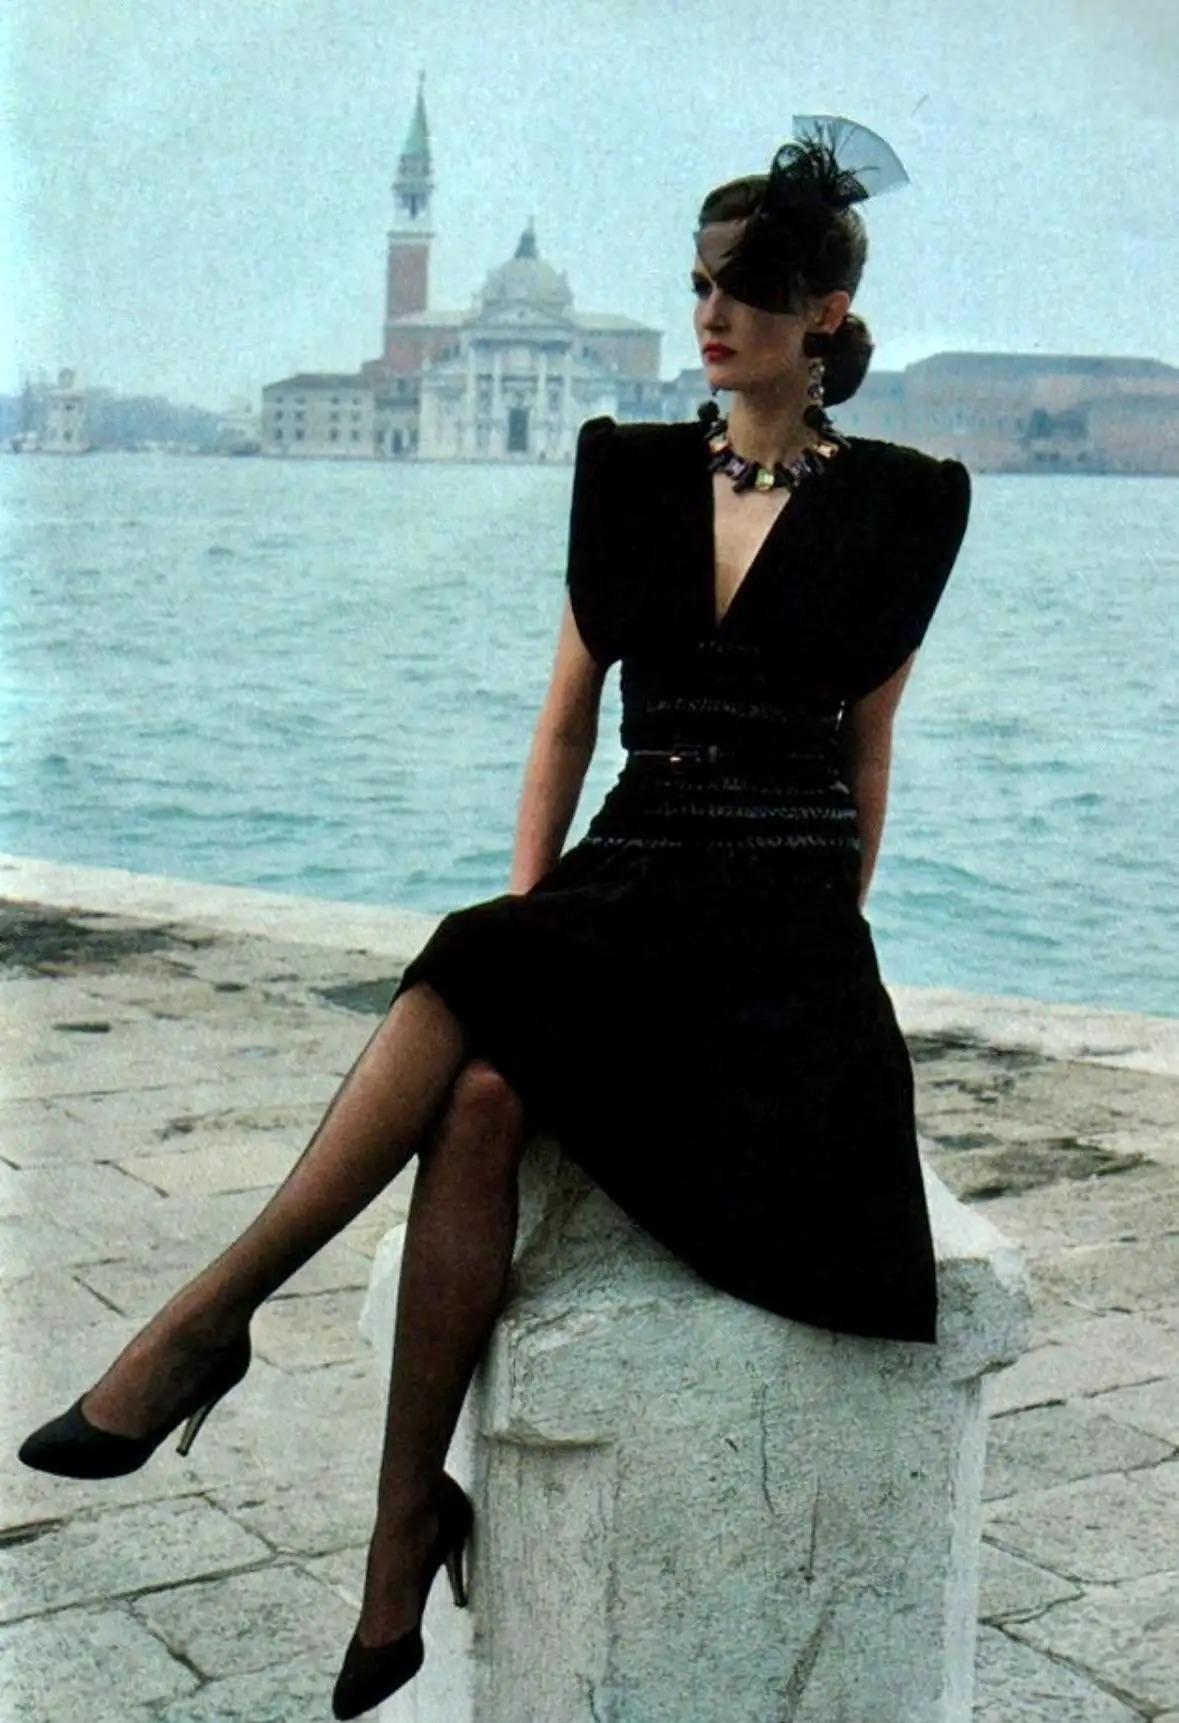 Issue de la collection Automne/Hiver 1983, cette fabuleuse robe noire ruchée Saint Laurent Rive Gauche, créée par Yves Saint Laurent, a été mise en valeur dans la campagne publicitaire de la saison, photographiée par Helmut Newton à Venise. Des pad